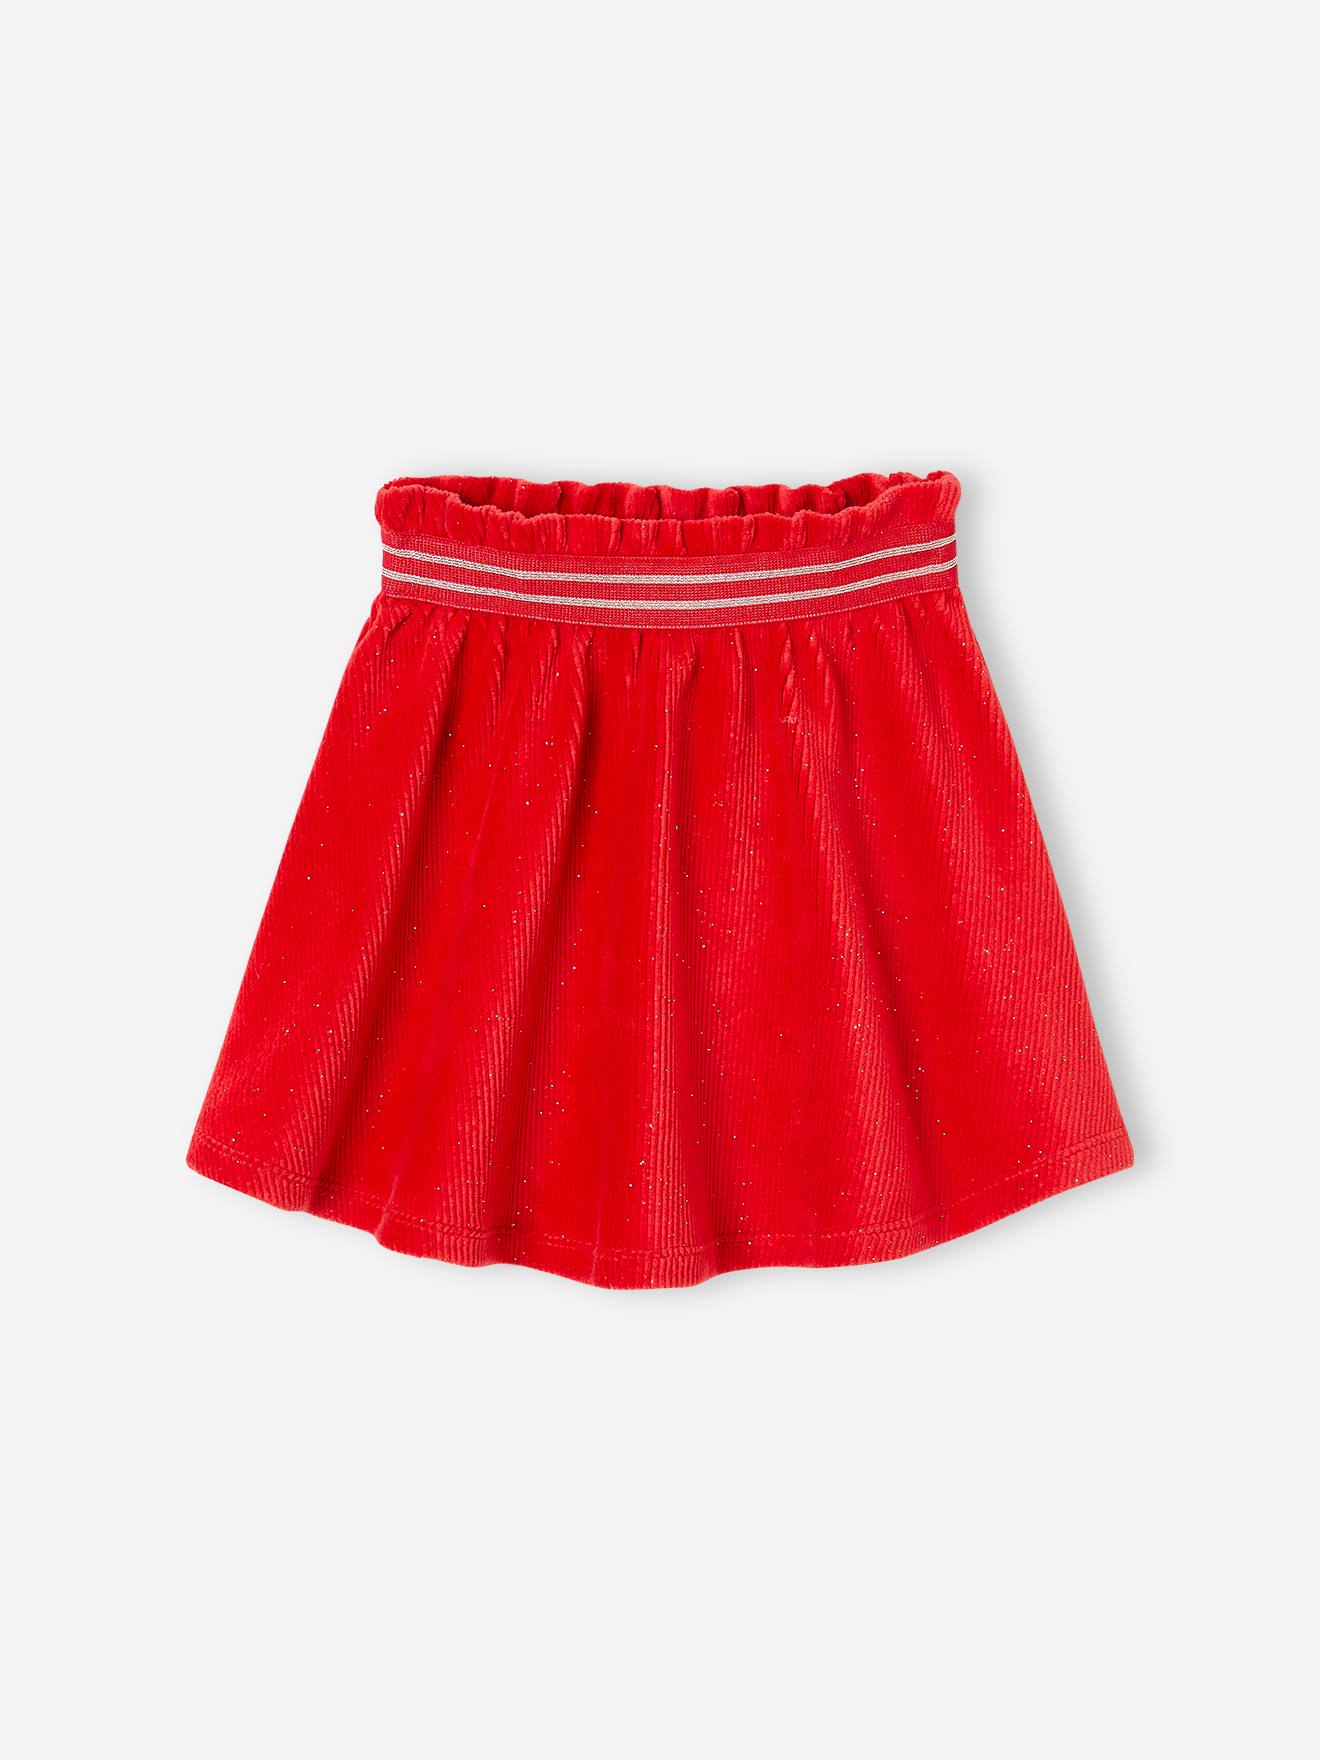 Christmas Special Skater Skirt in Glittery Corduroy for Girls red